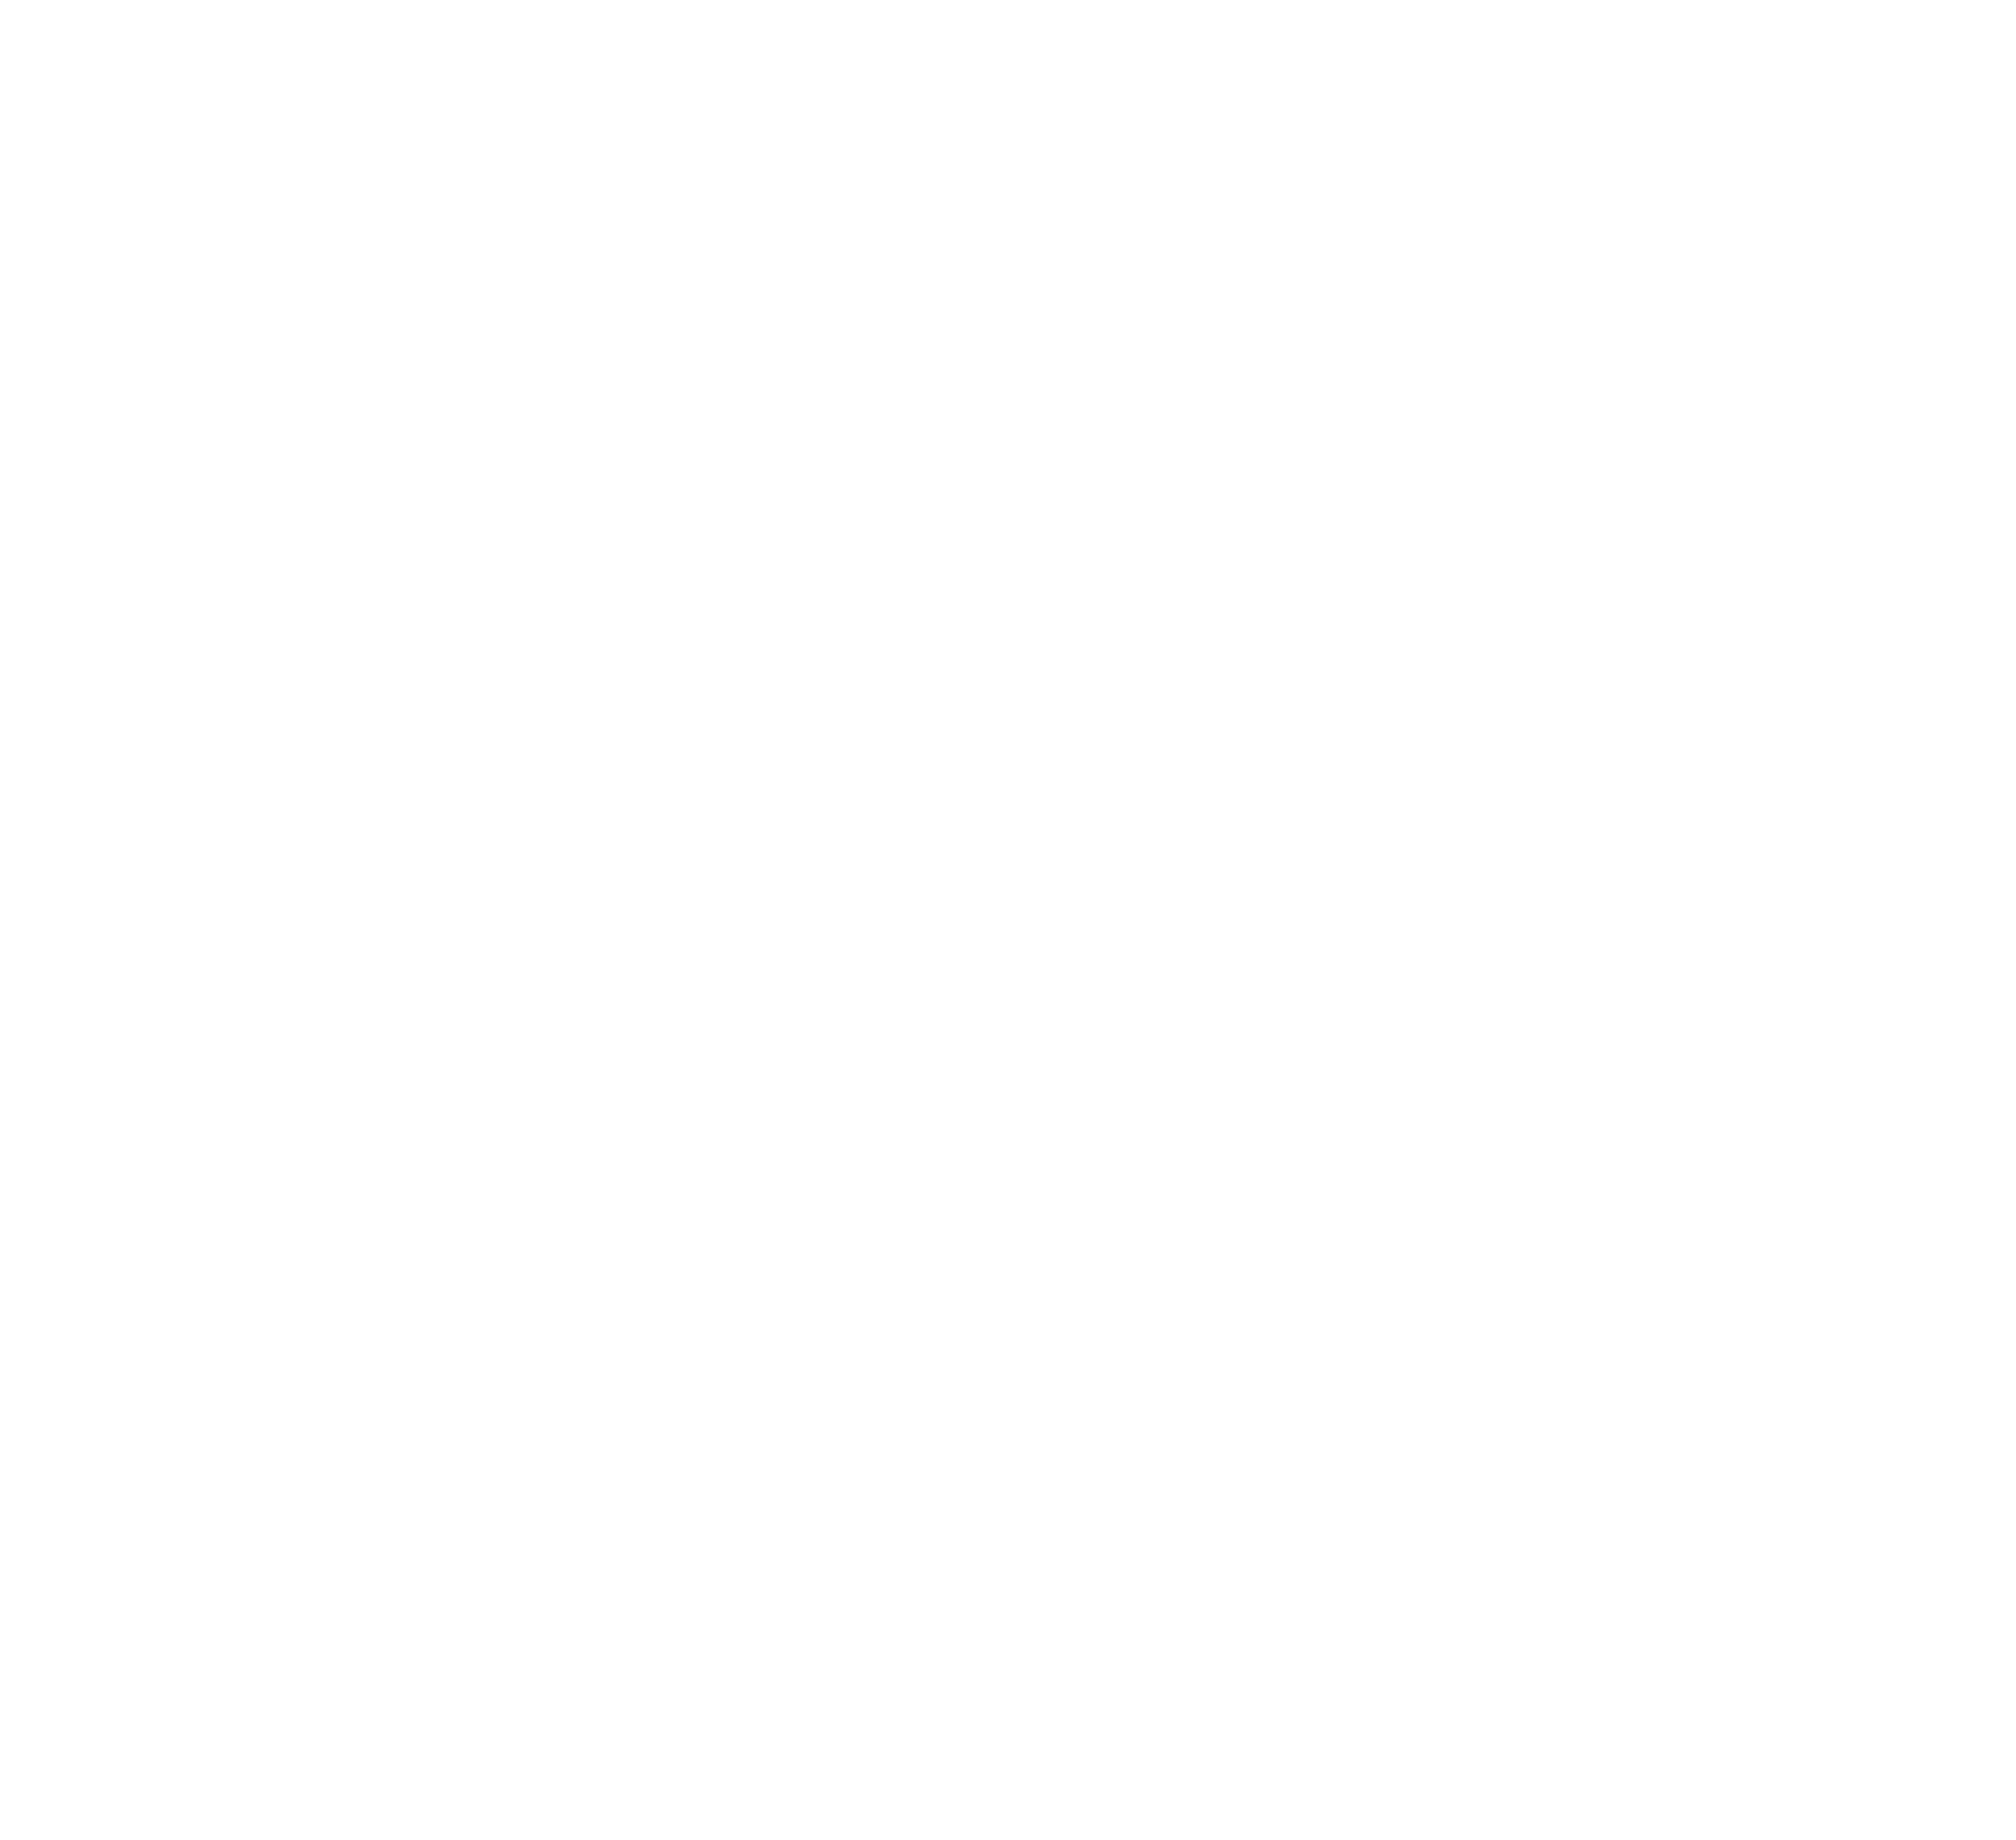 RIMPA Accredited Course